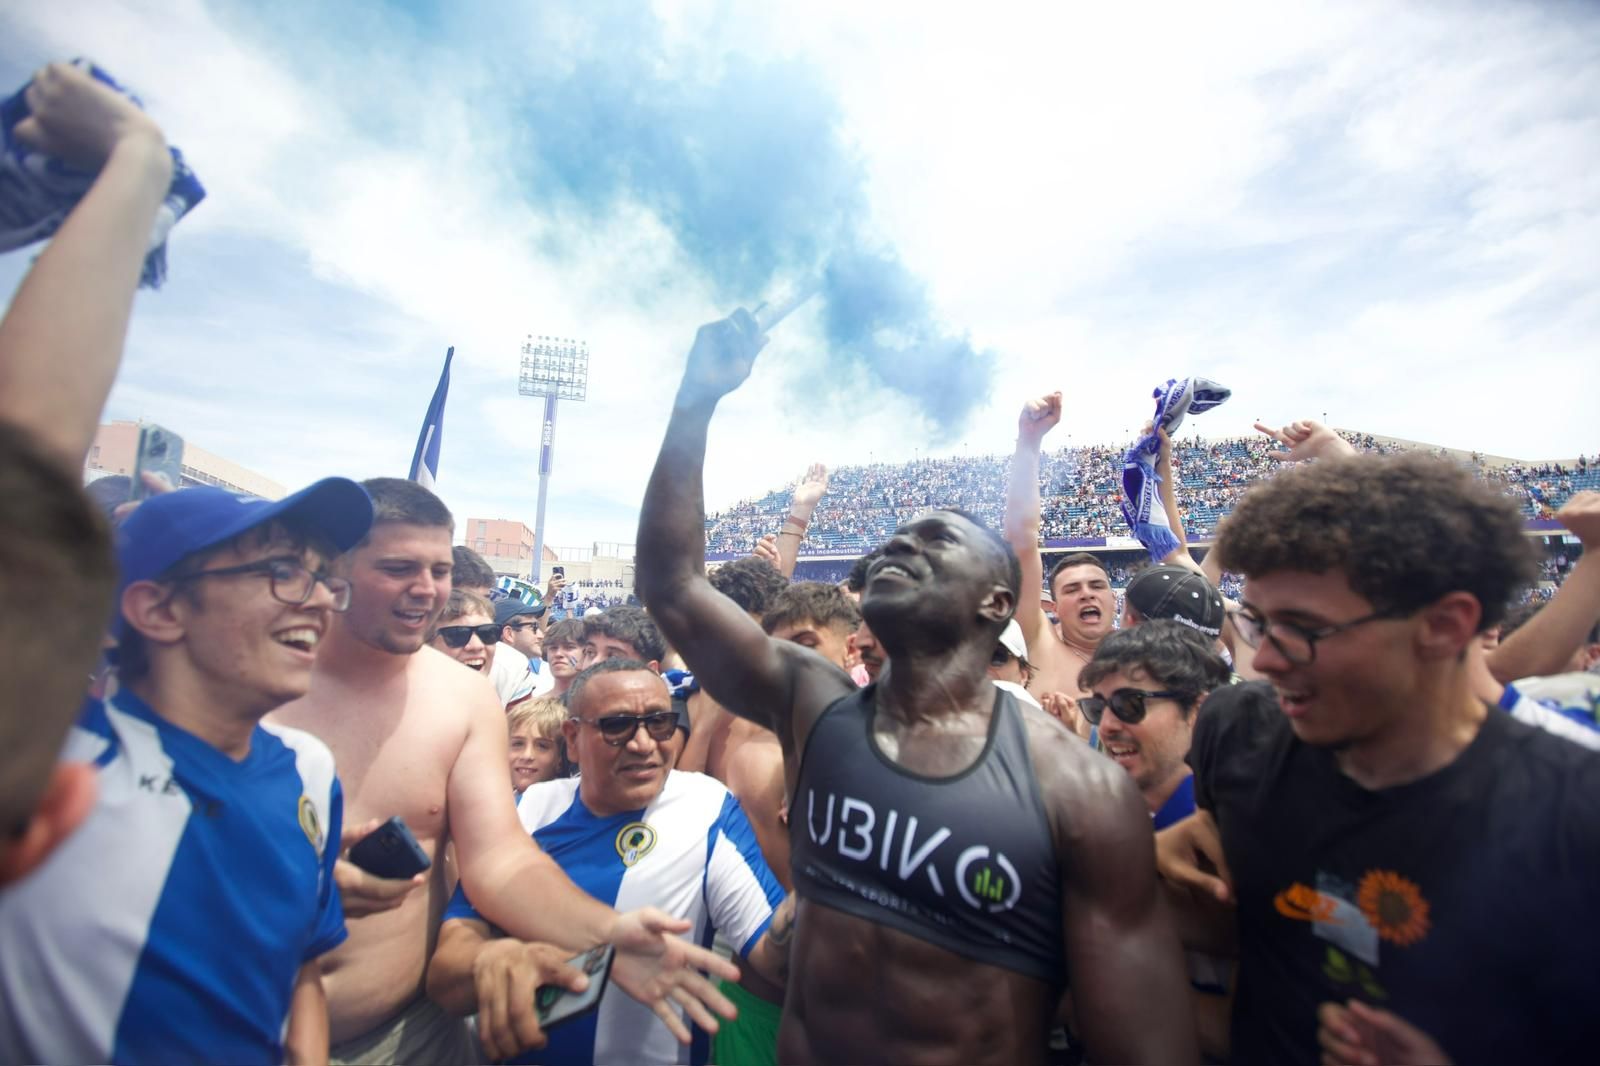 Las mejores imágenes del partido Hércules - Lleida